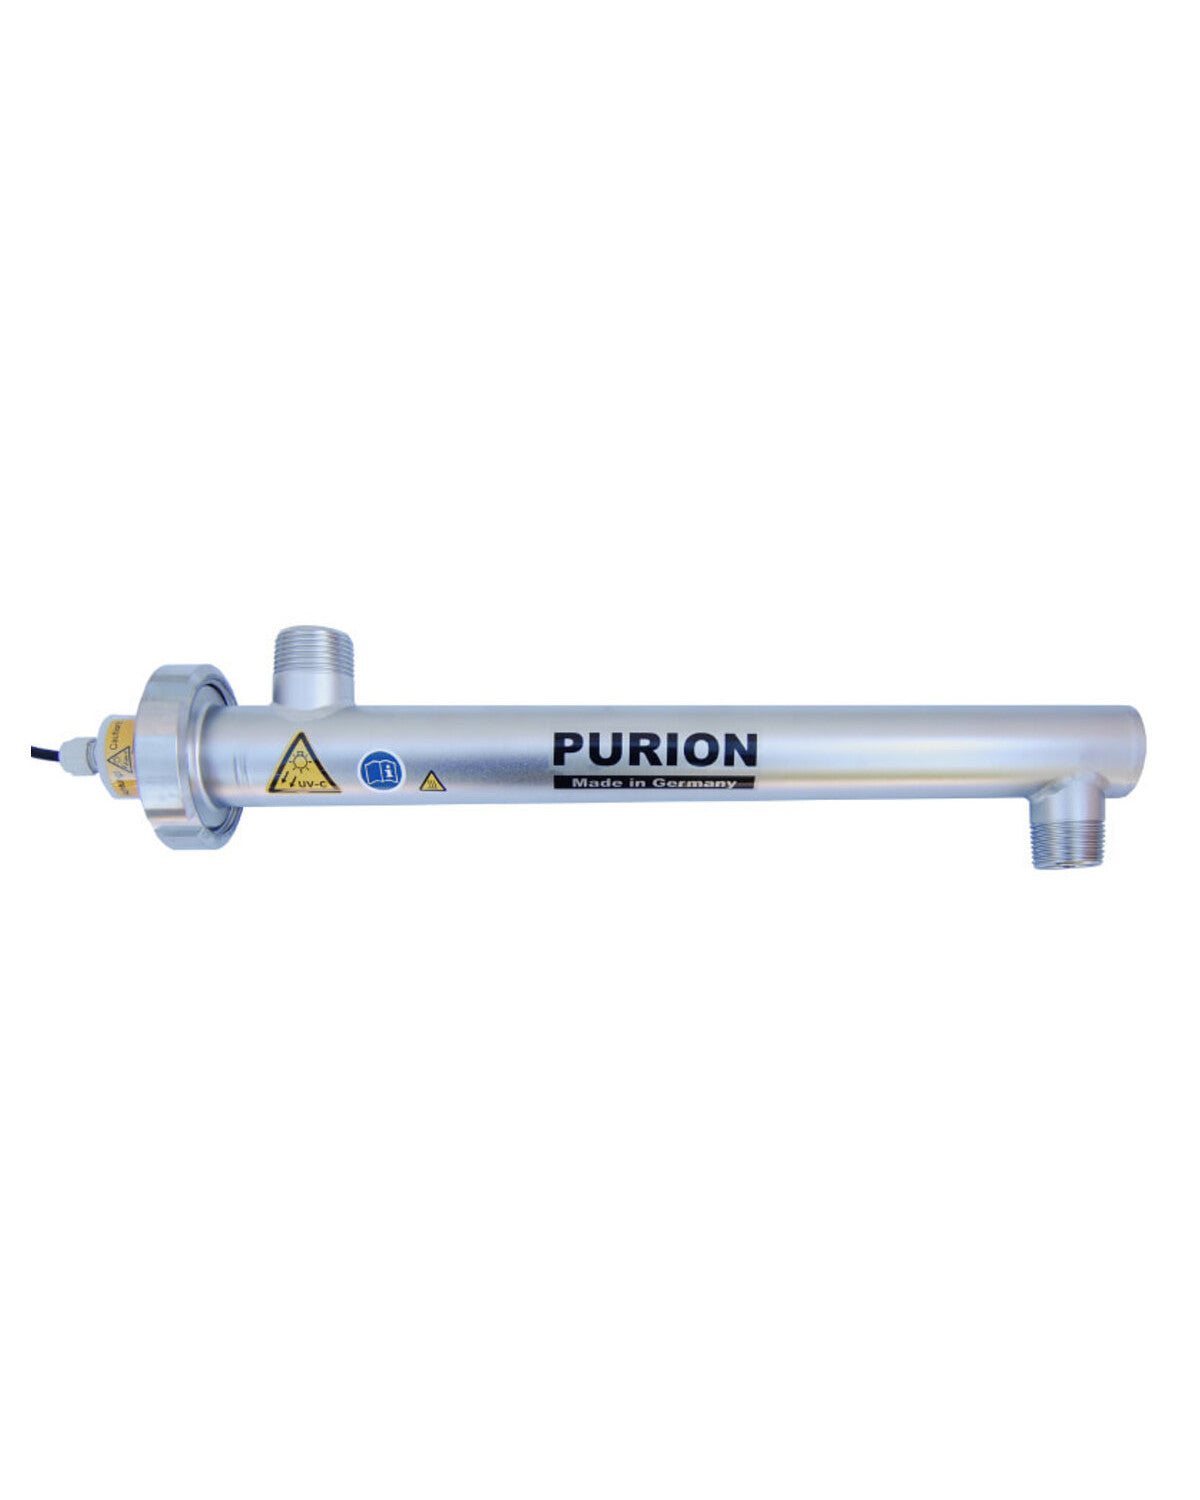 Der PURION 1000 Pro Basic der PURION GmbH nutzt die UV-C-Licht-Technologie zur effektiven Desinfektion.